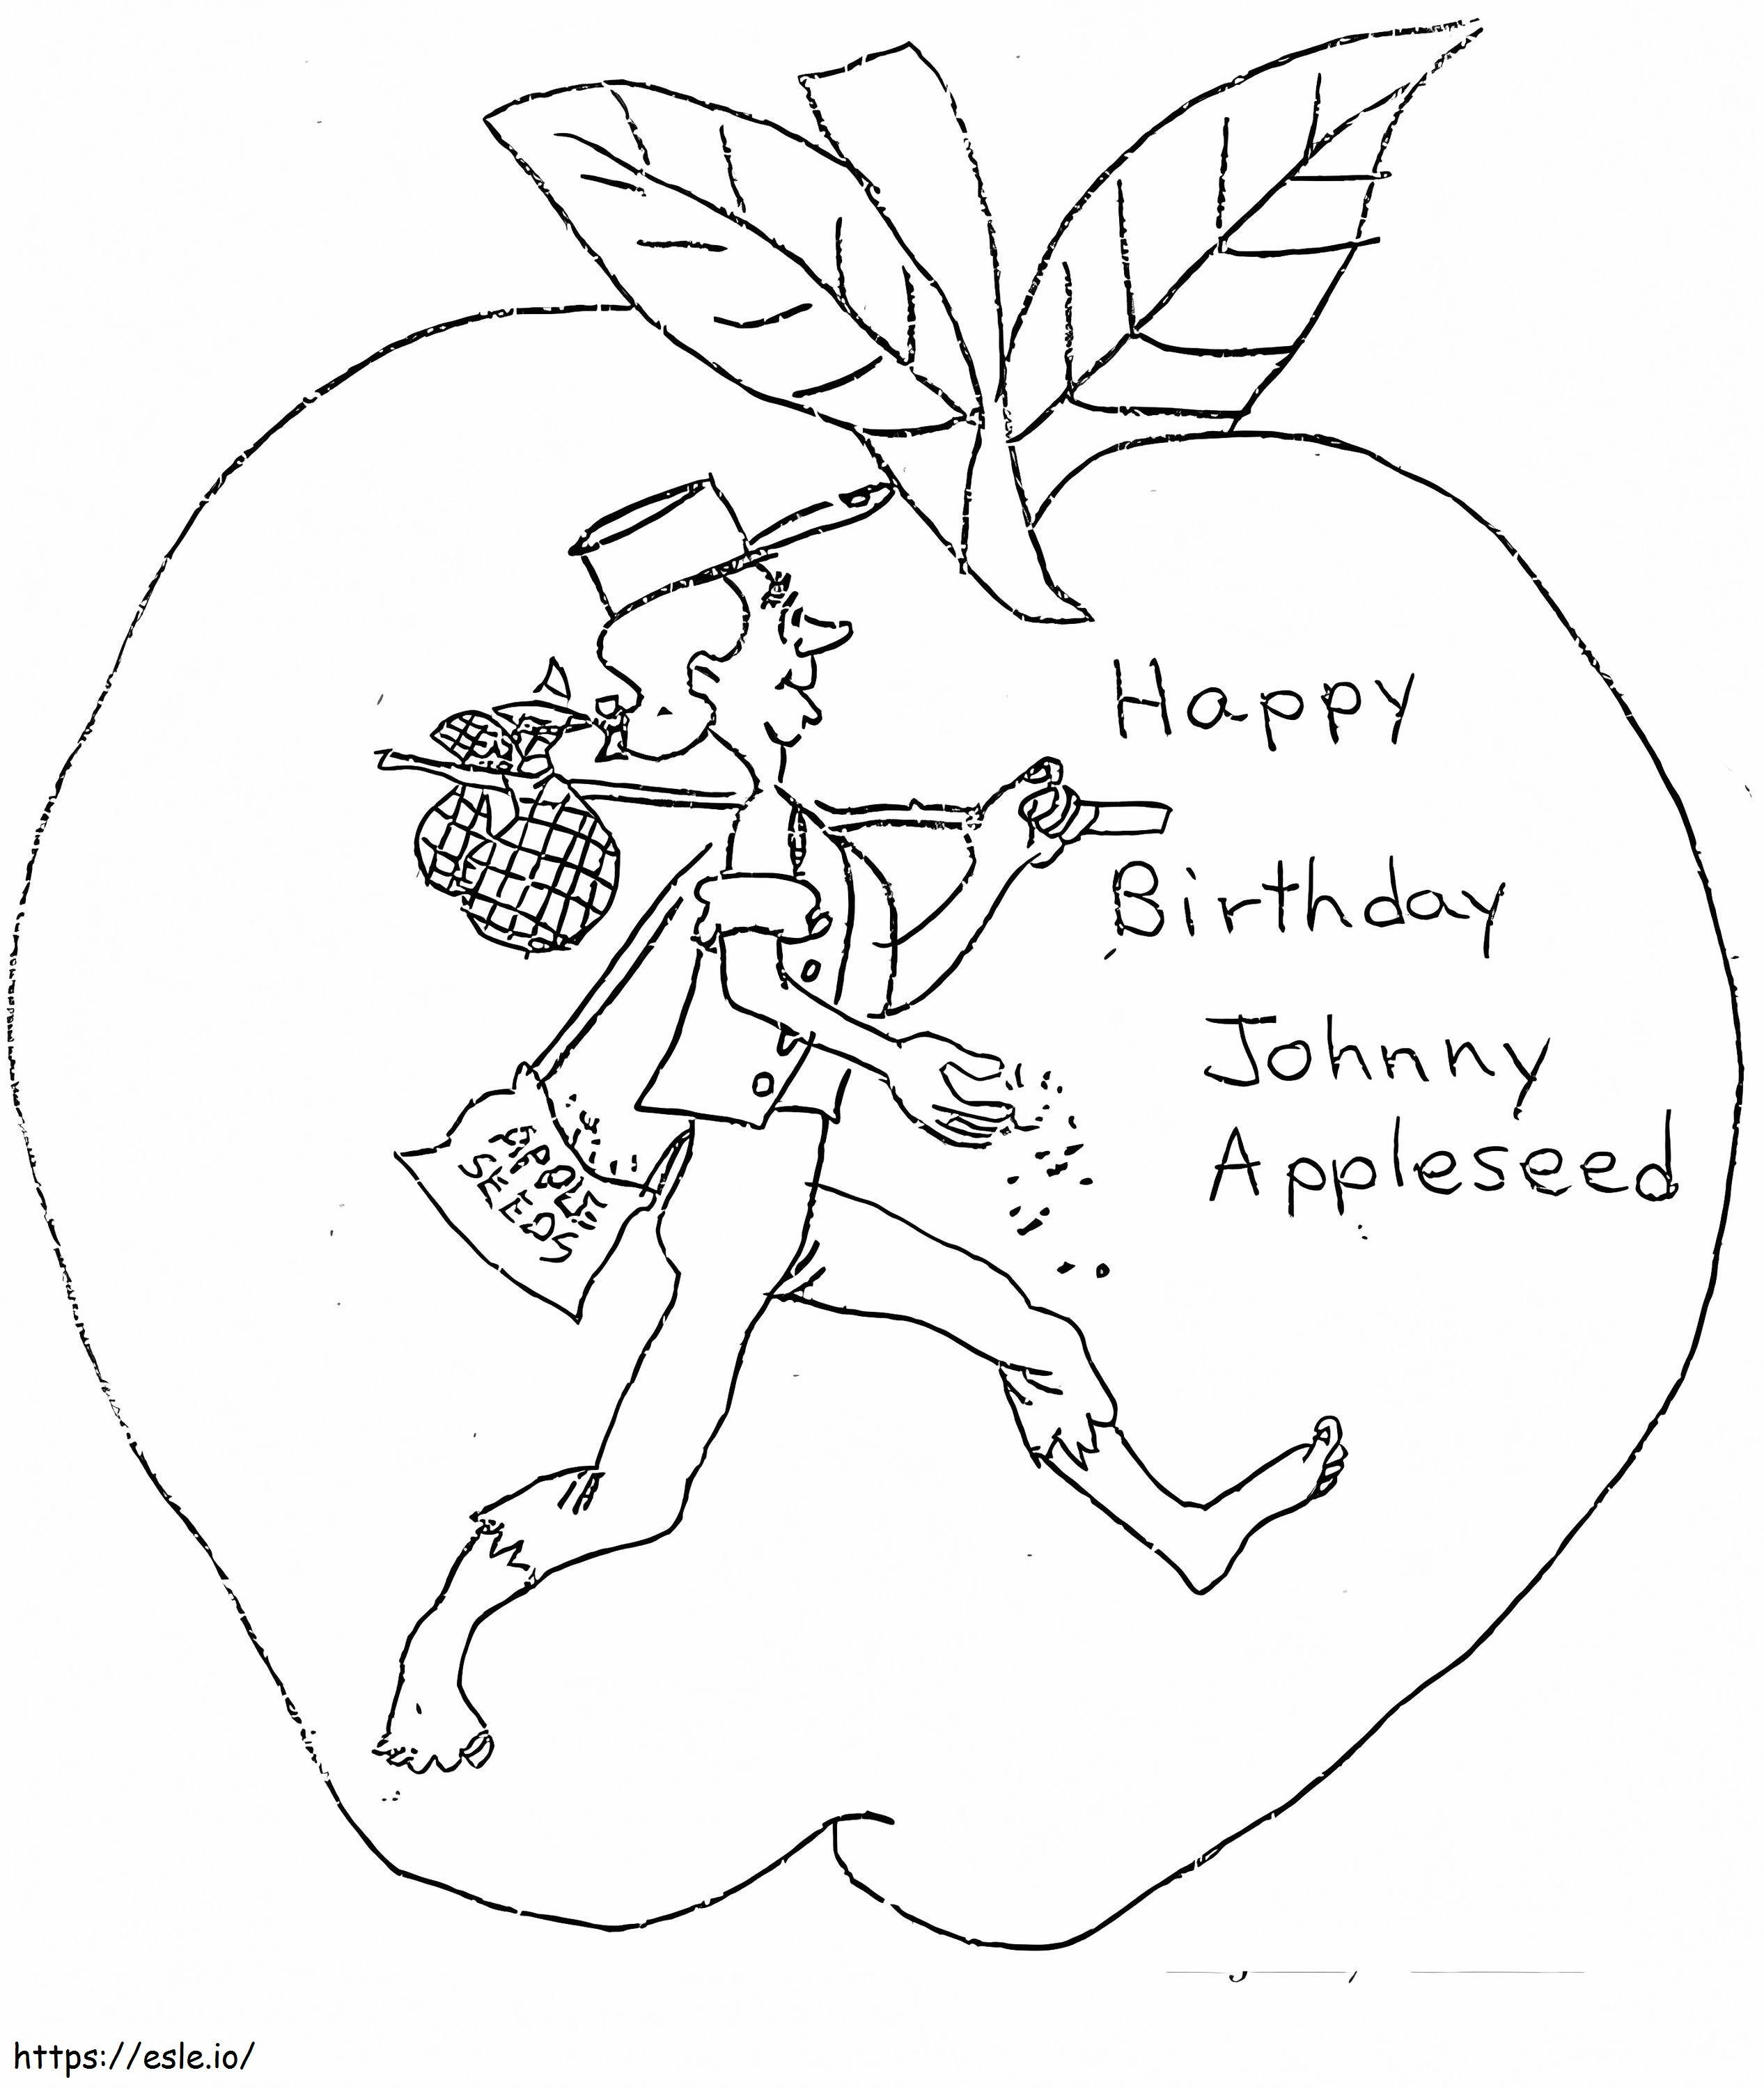 Doğum günün kutlu olsun Johnny Appleseed boyama